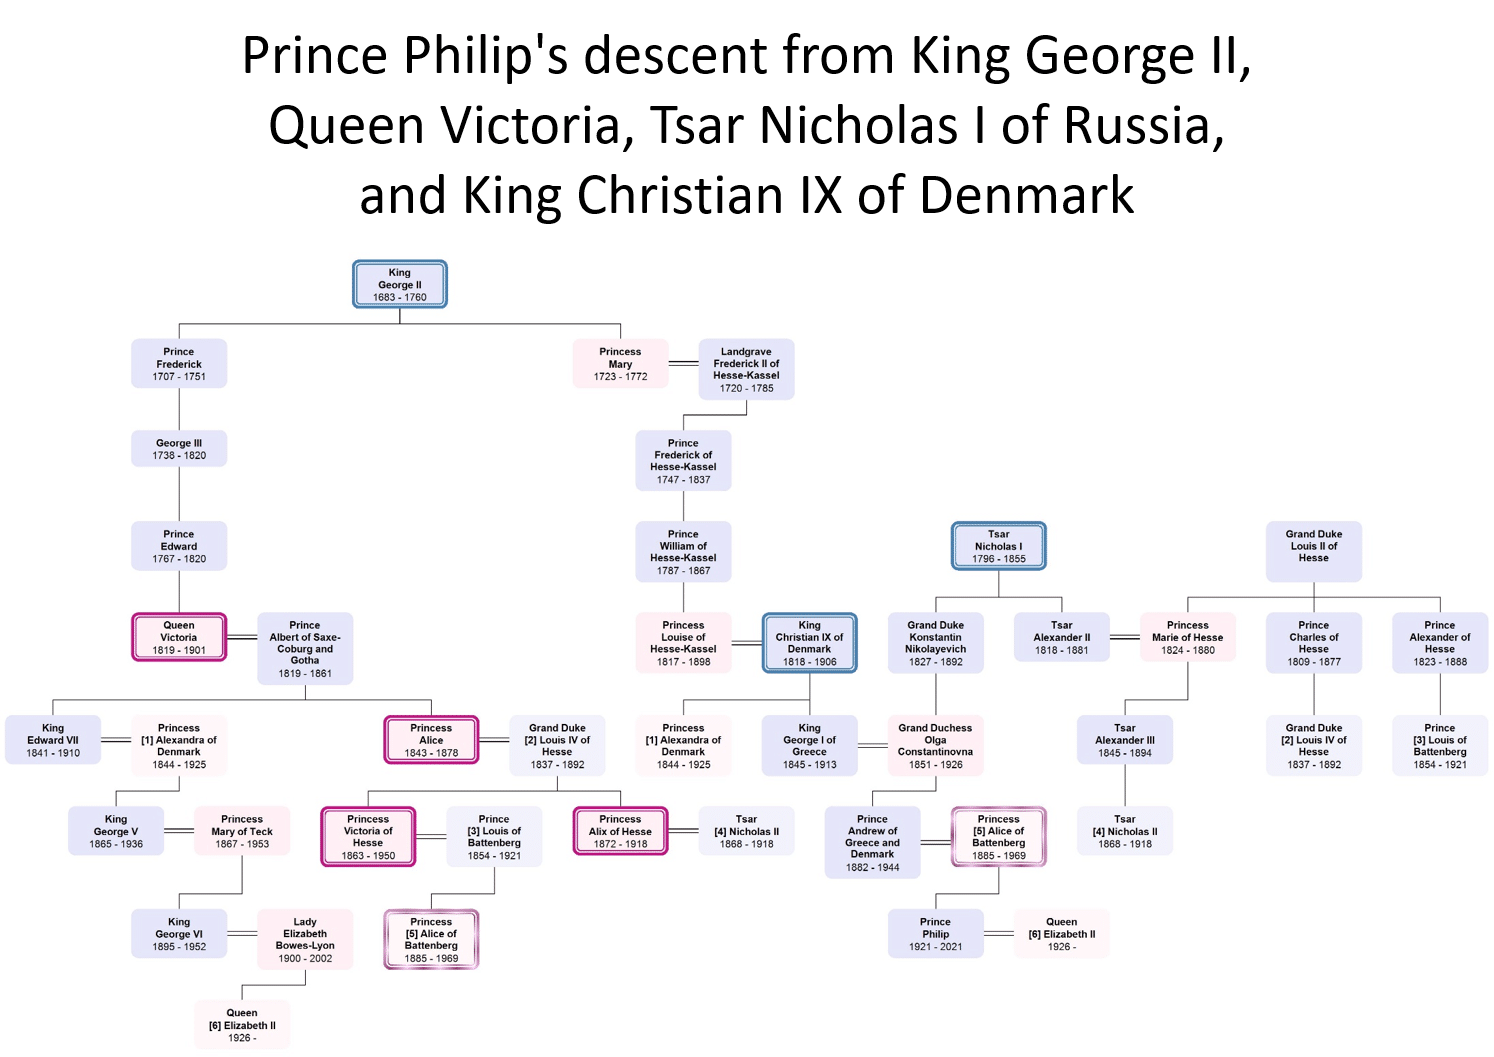 Carolines diagram, der illustrerer prins Philips forbindelser til den kongelige familie